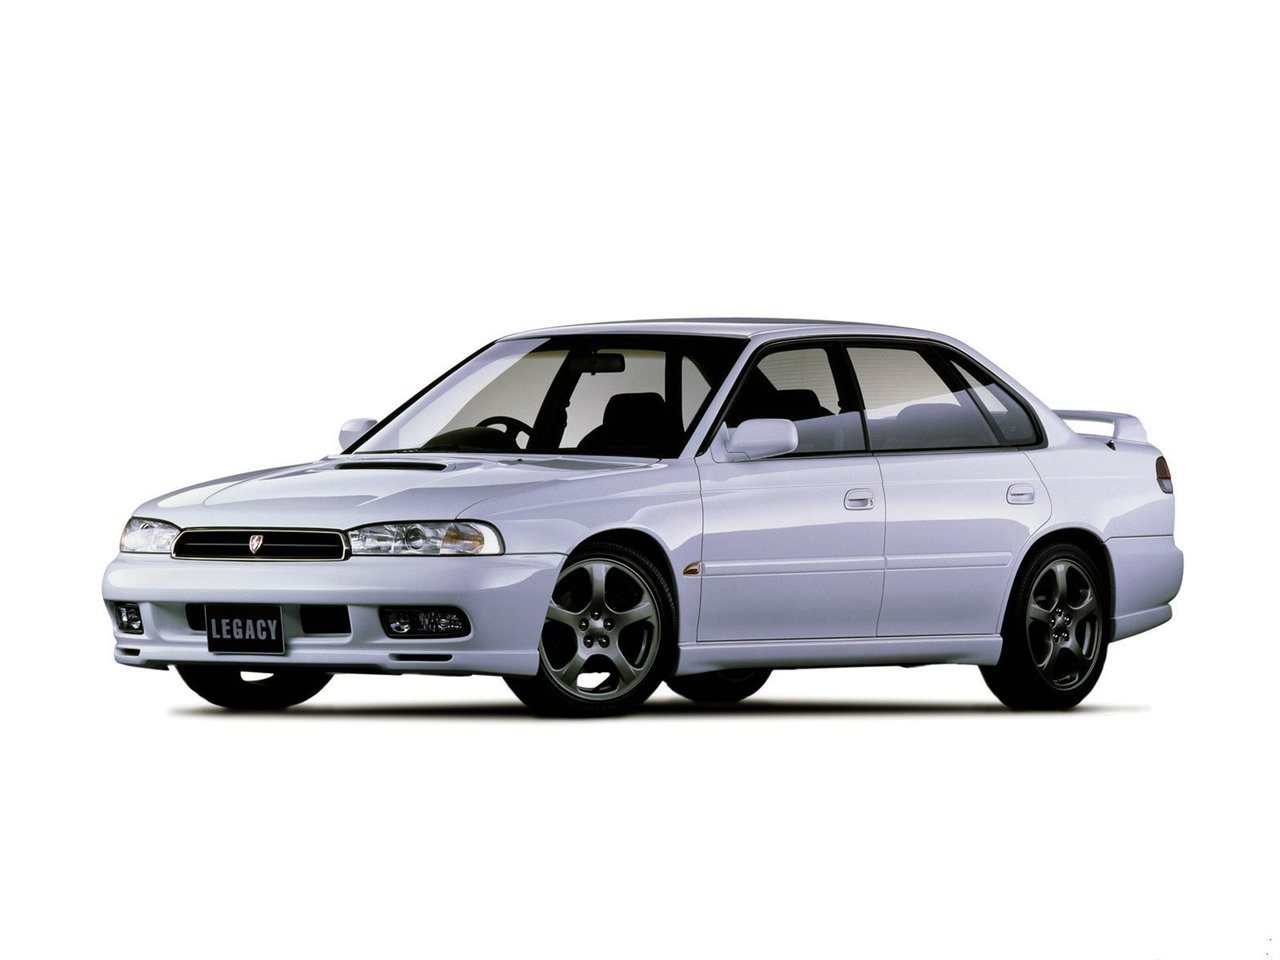 Расход газа девяти комплектаций седана Subaru Legacy. Разница стоимости заправки газом и бензином. Автономный пробег до и после установки ГБО.